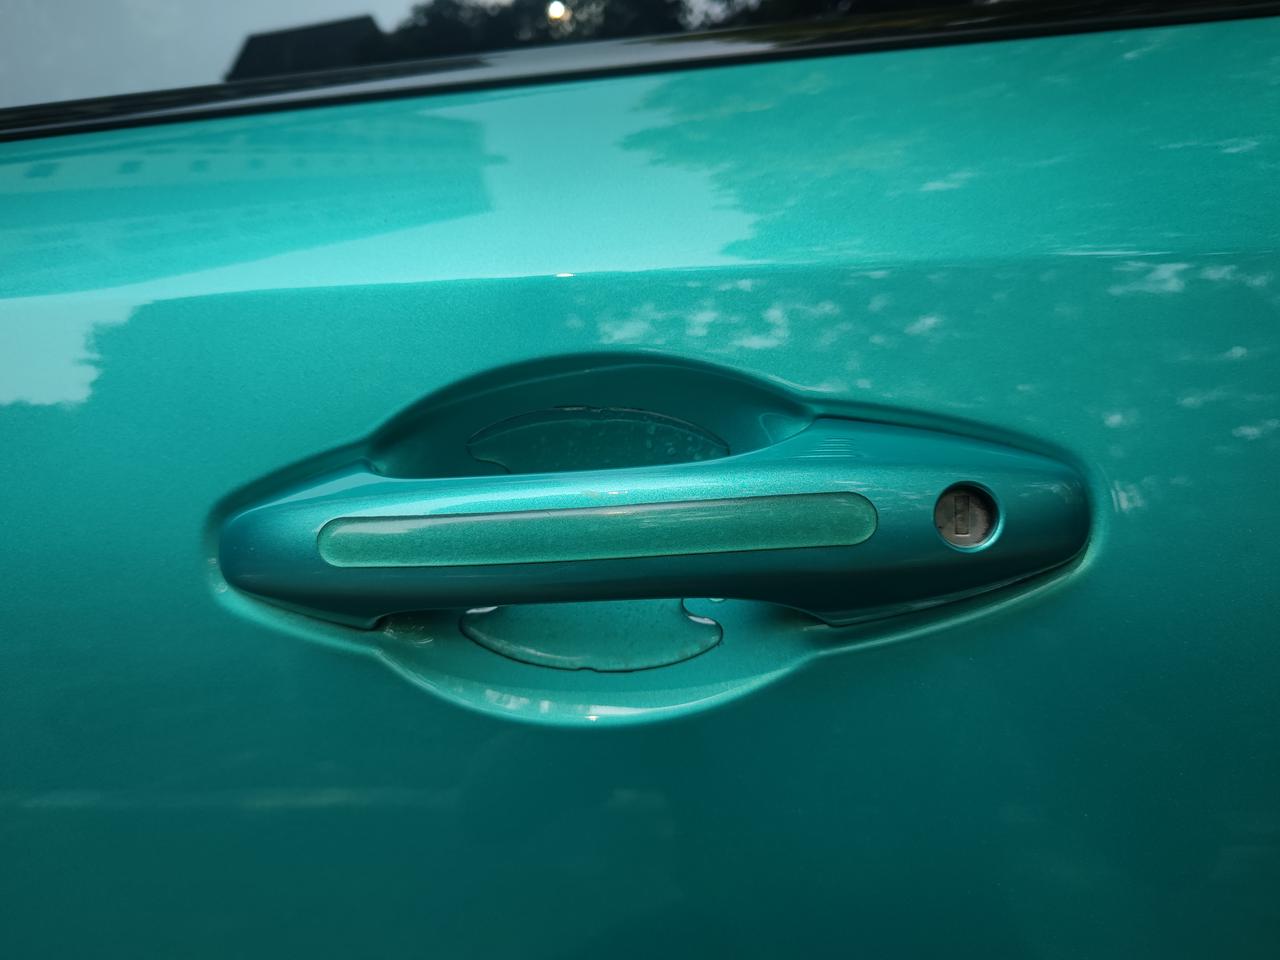 东风风行风行T5 EVO 有谁知道门把手这里有没有钥匙孔盖板呀？我车子星耀版。之前印象中应该是有的。